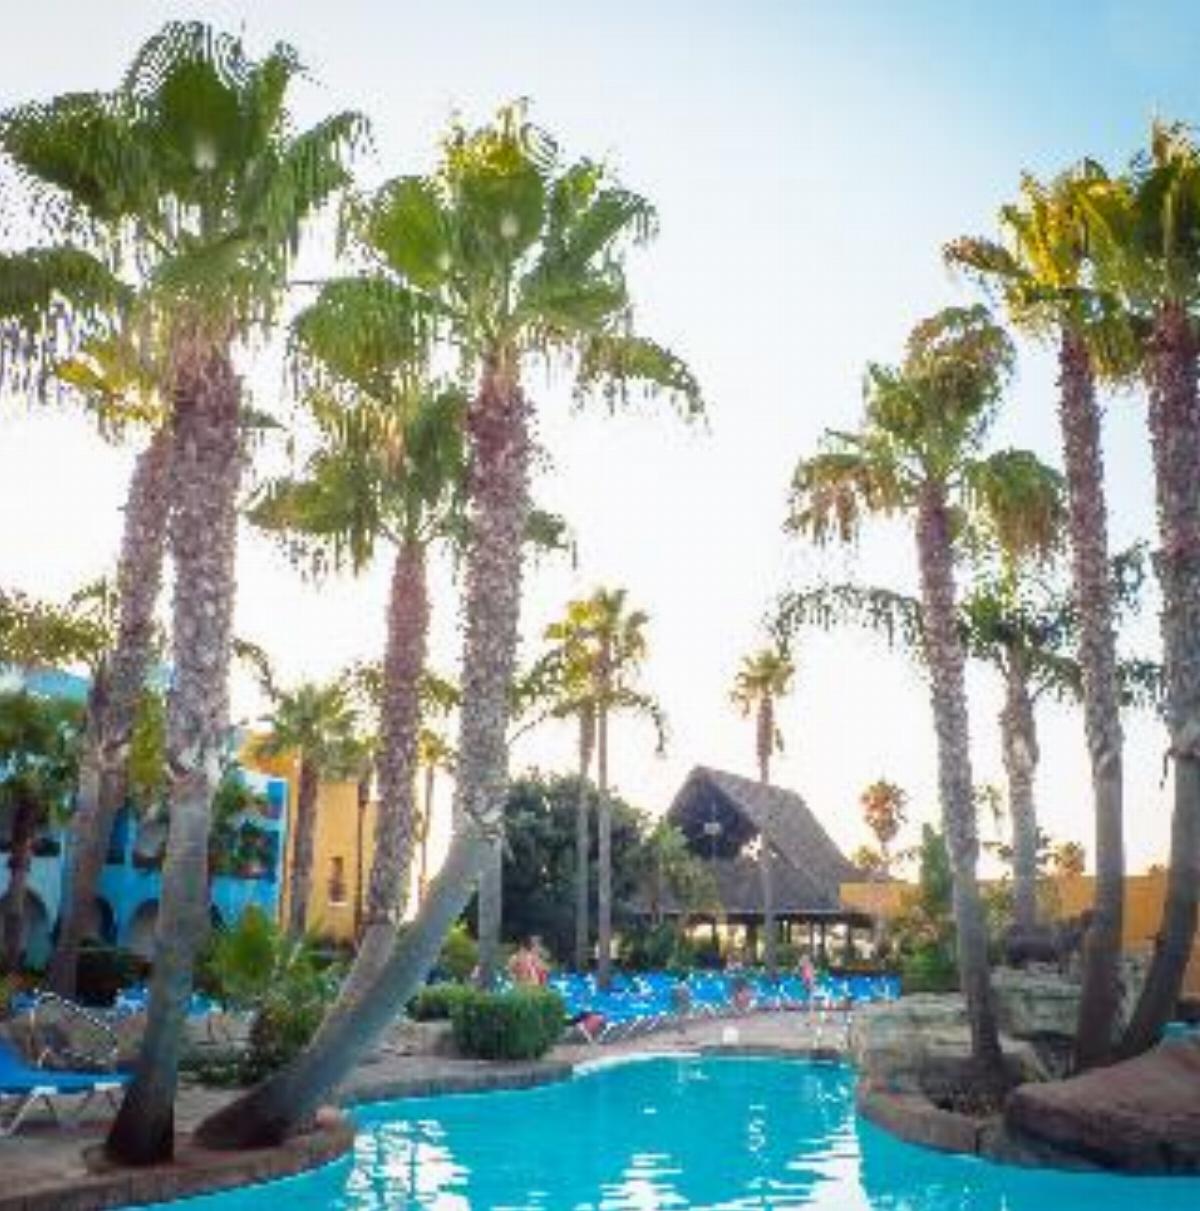 Playa Ballena Spa Hotel Hotel Costa De La Luz (Cadiz) Spain